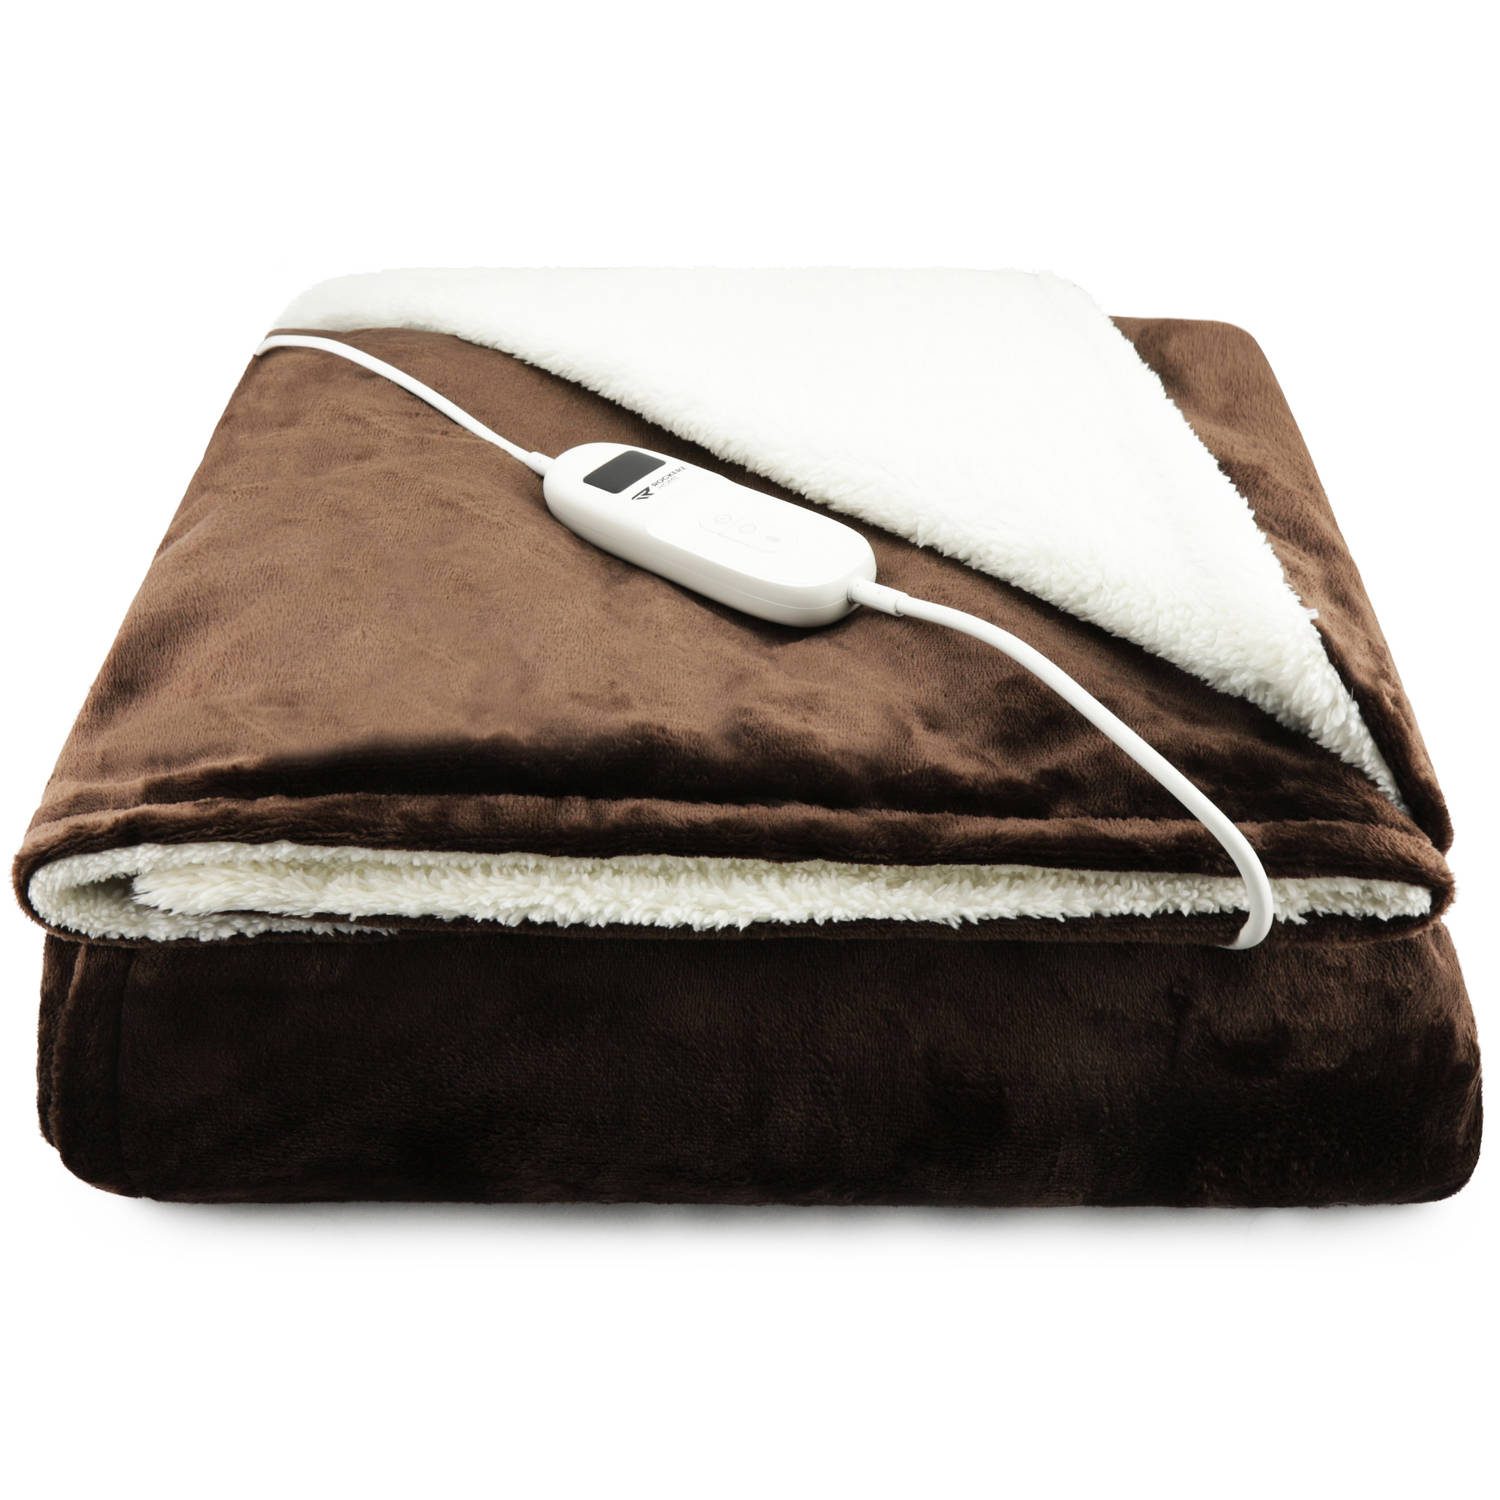 Elektrische deken Afmetingen 160 x 130 cm 9 warmtestanden Automatische uitschakeling XL snoer Bruin